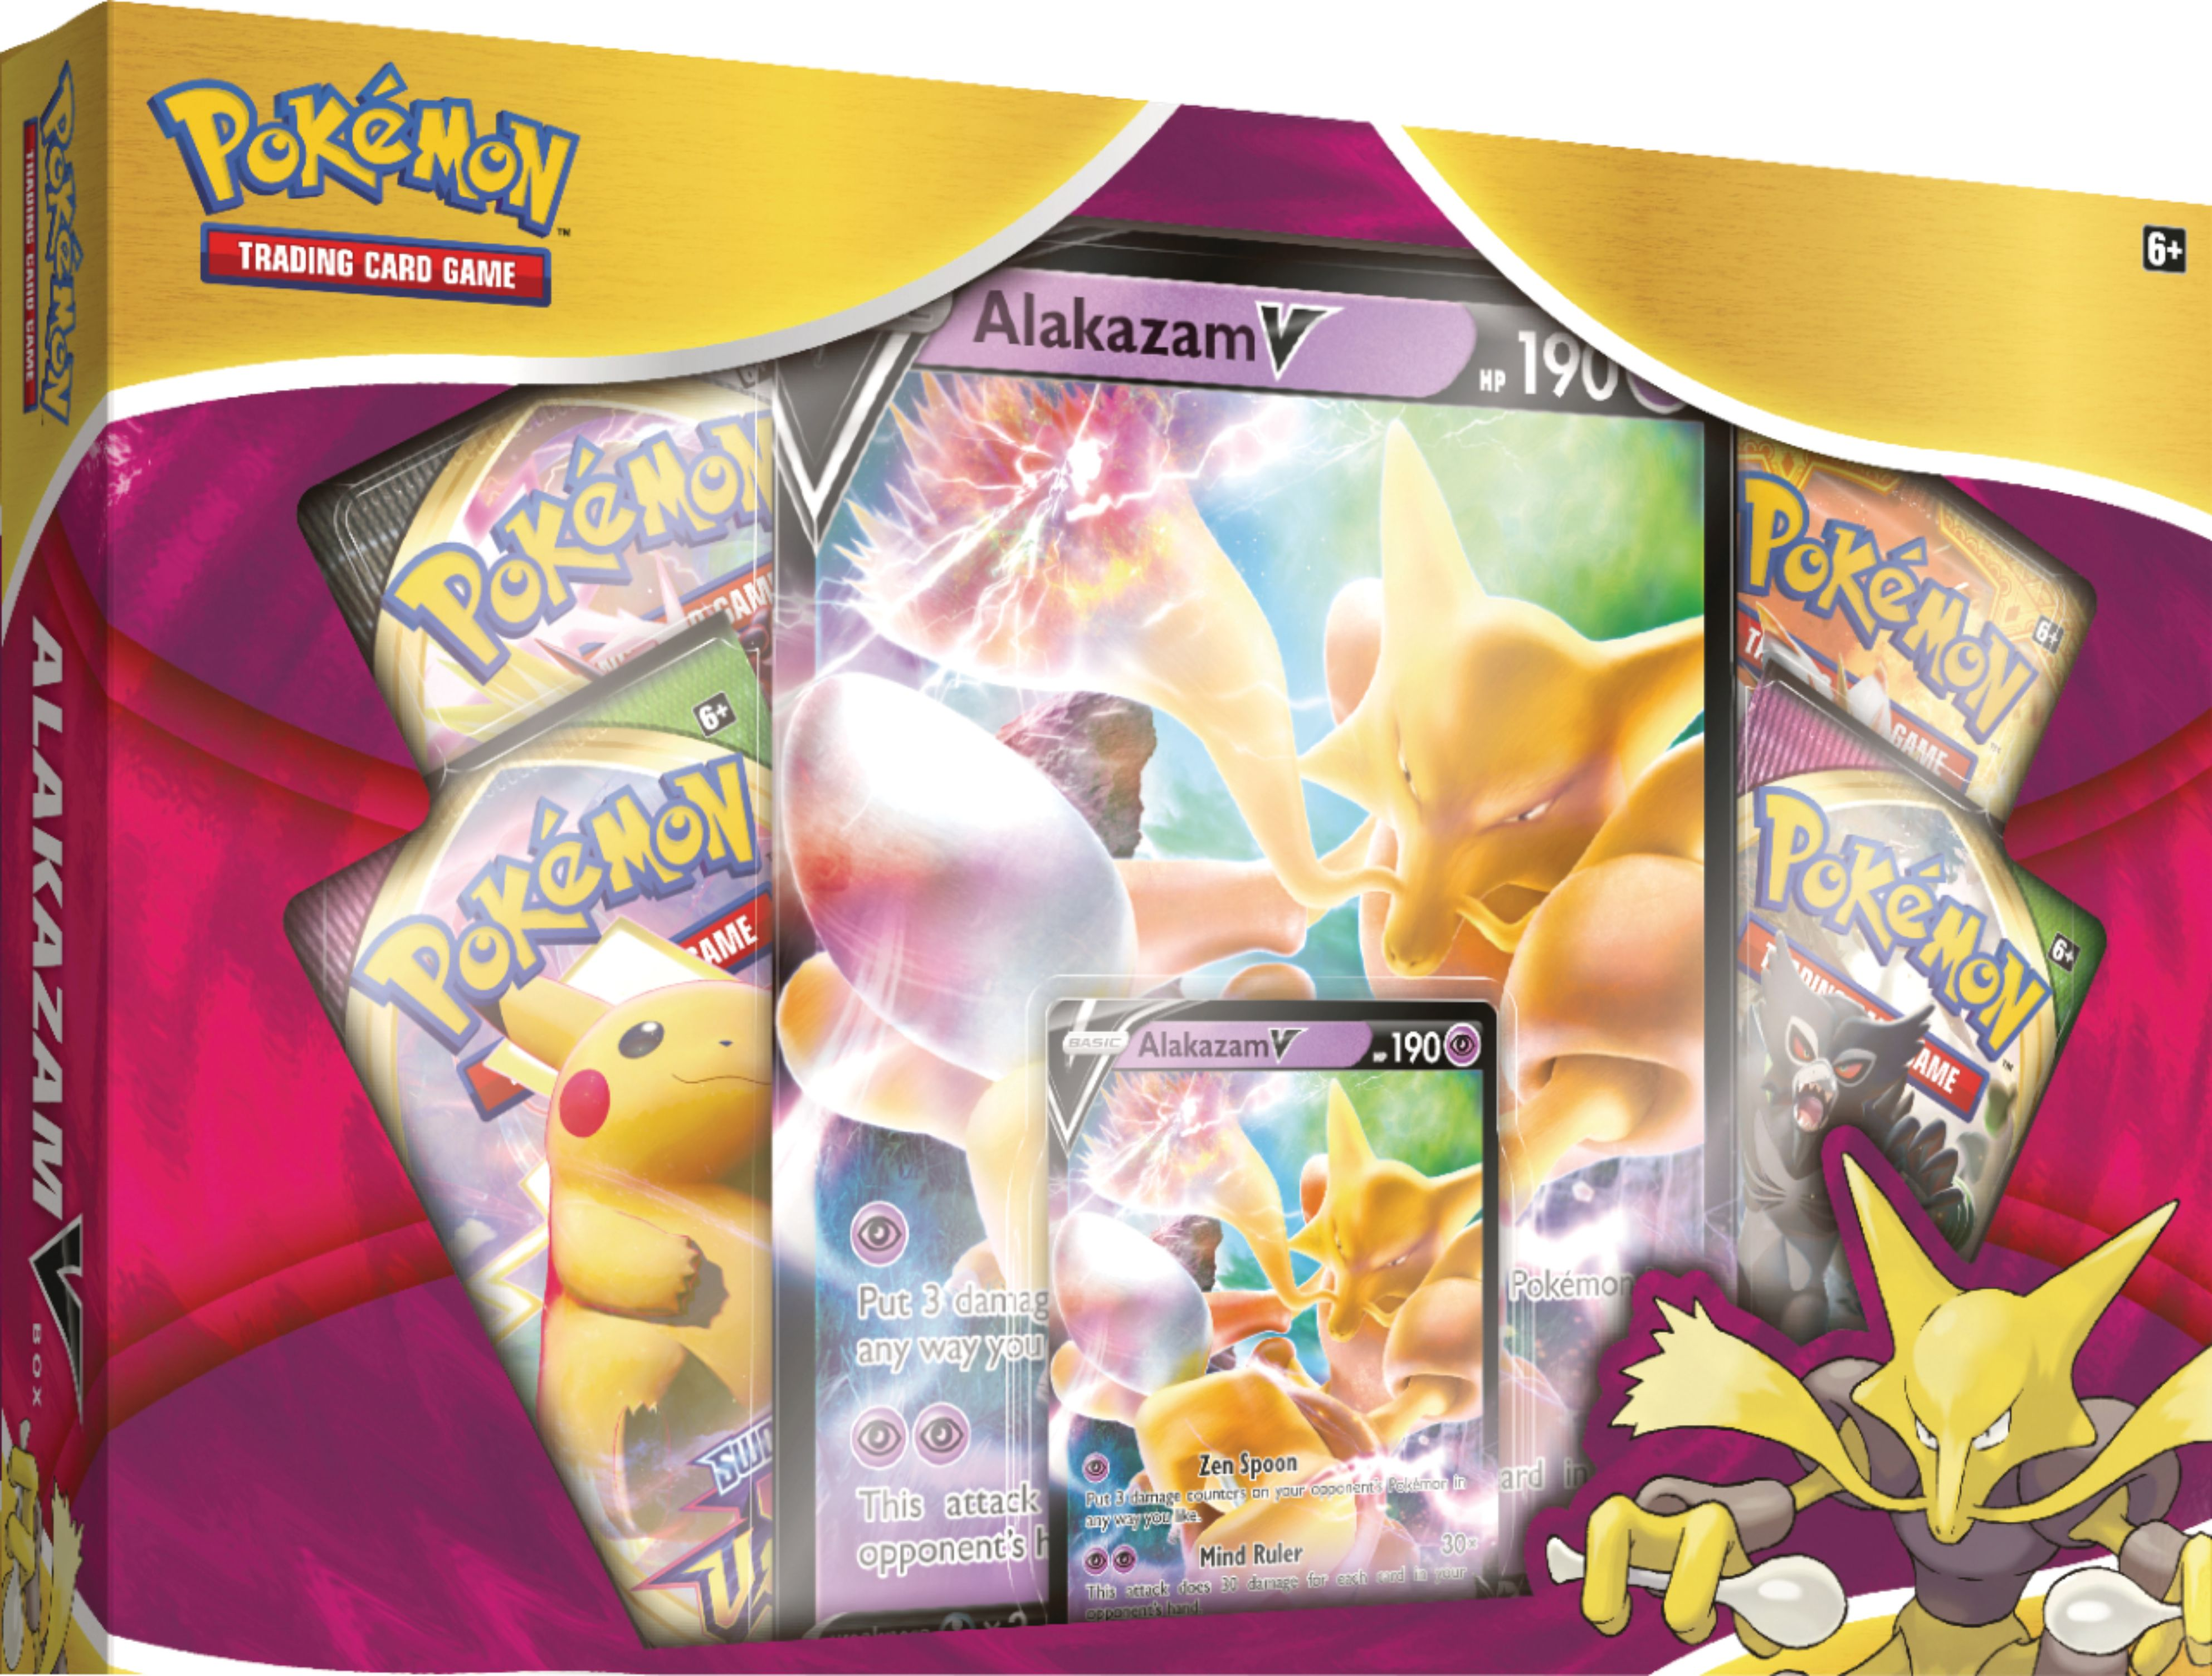 Pokémon Pokemon TCG: Alakazam V Box 82748 - Best Buy $19.99